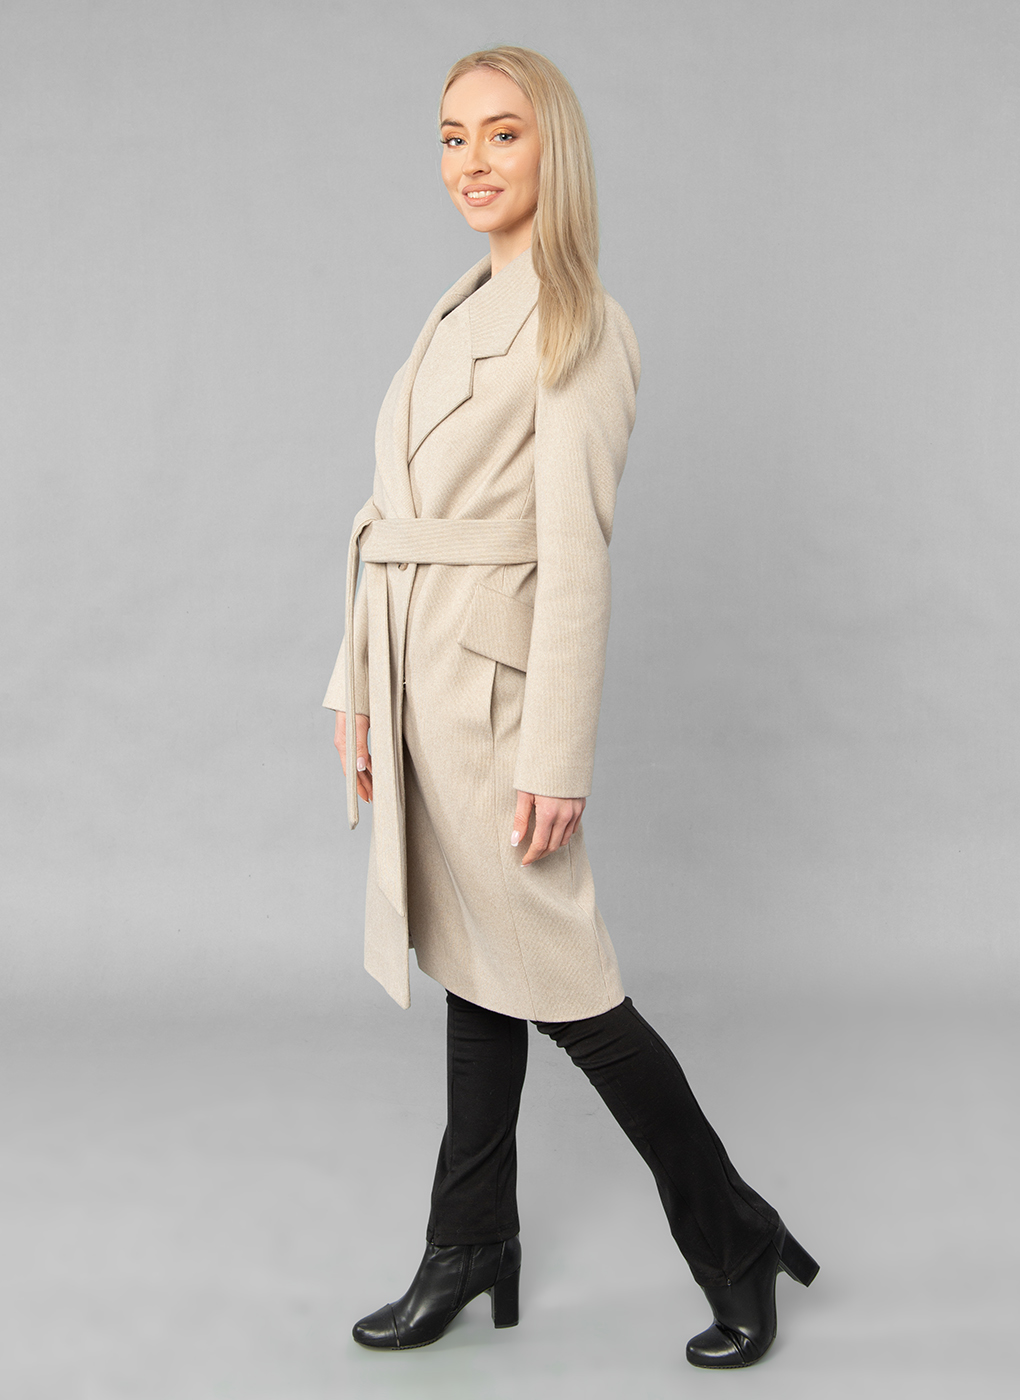 Пальто женское Sezalto 55023 бежевое 52 RU